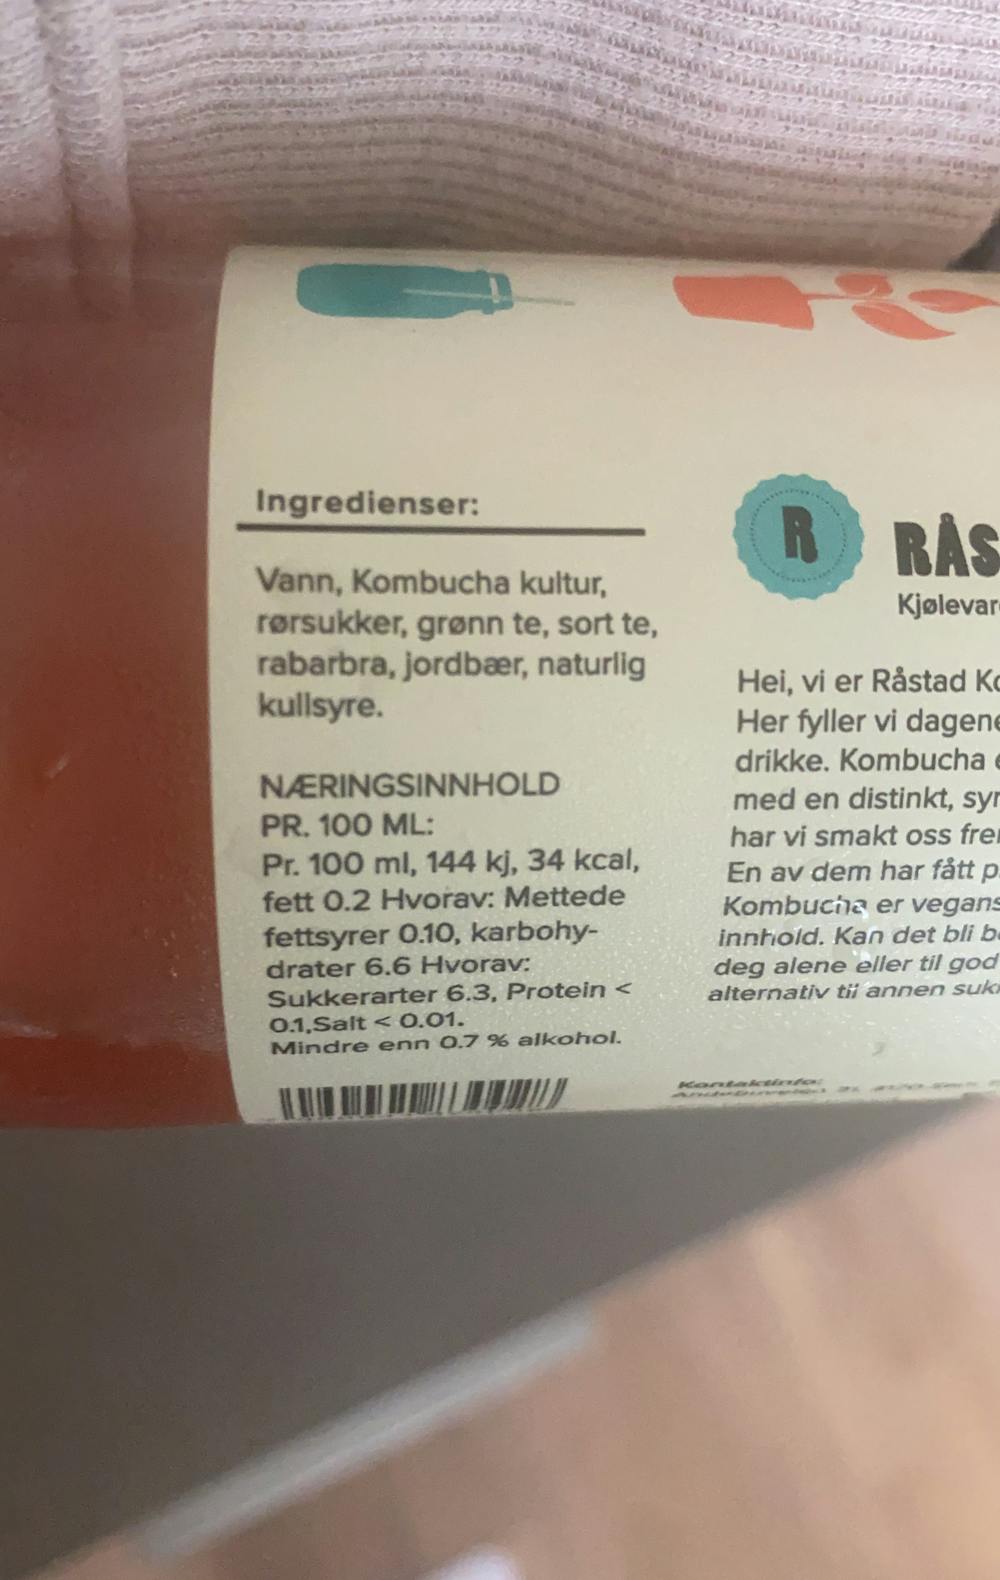 Ingredienslisten til Frisk kombucha, rabarbra og jordbær, Råstad